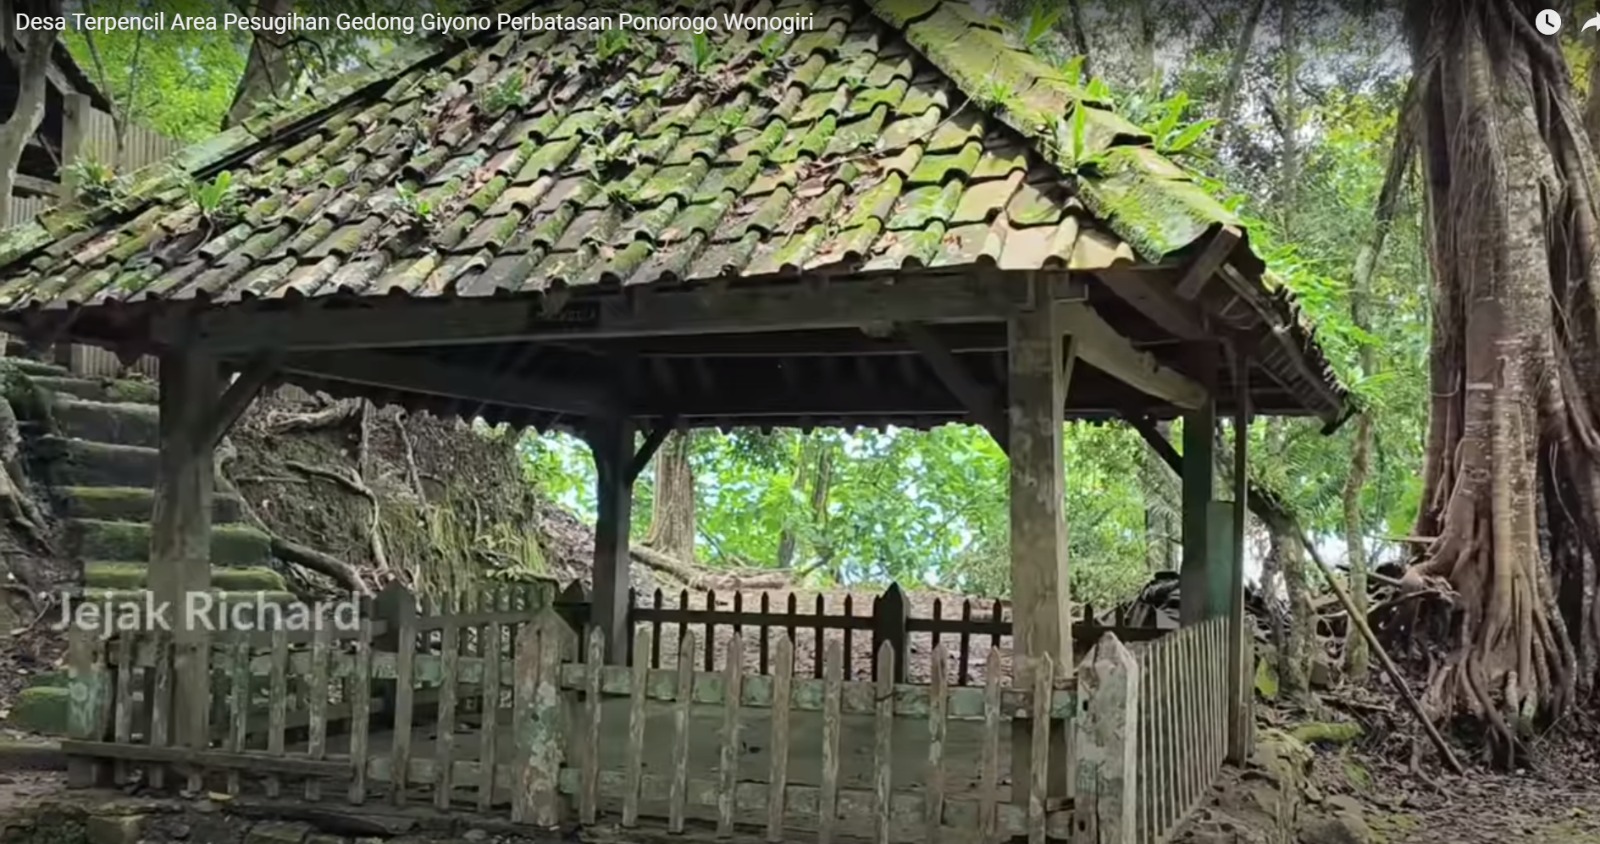 Kampung Terpencil di Puncak Gunung Gedong Wonogiri, Hanya Ada 5 Rumah, Konon Tempat Pesugihan